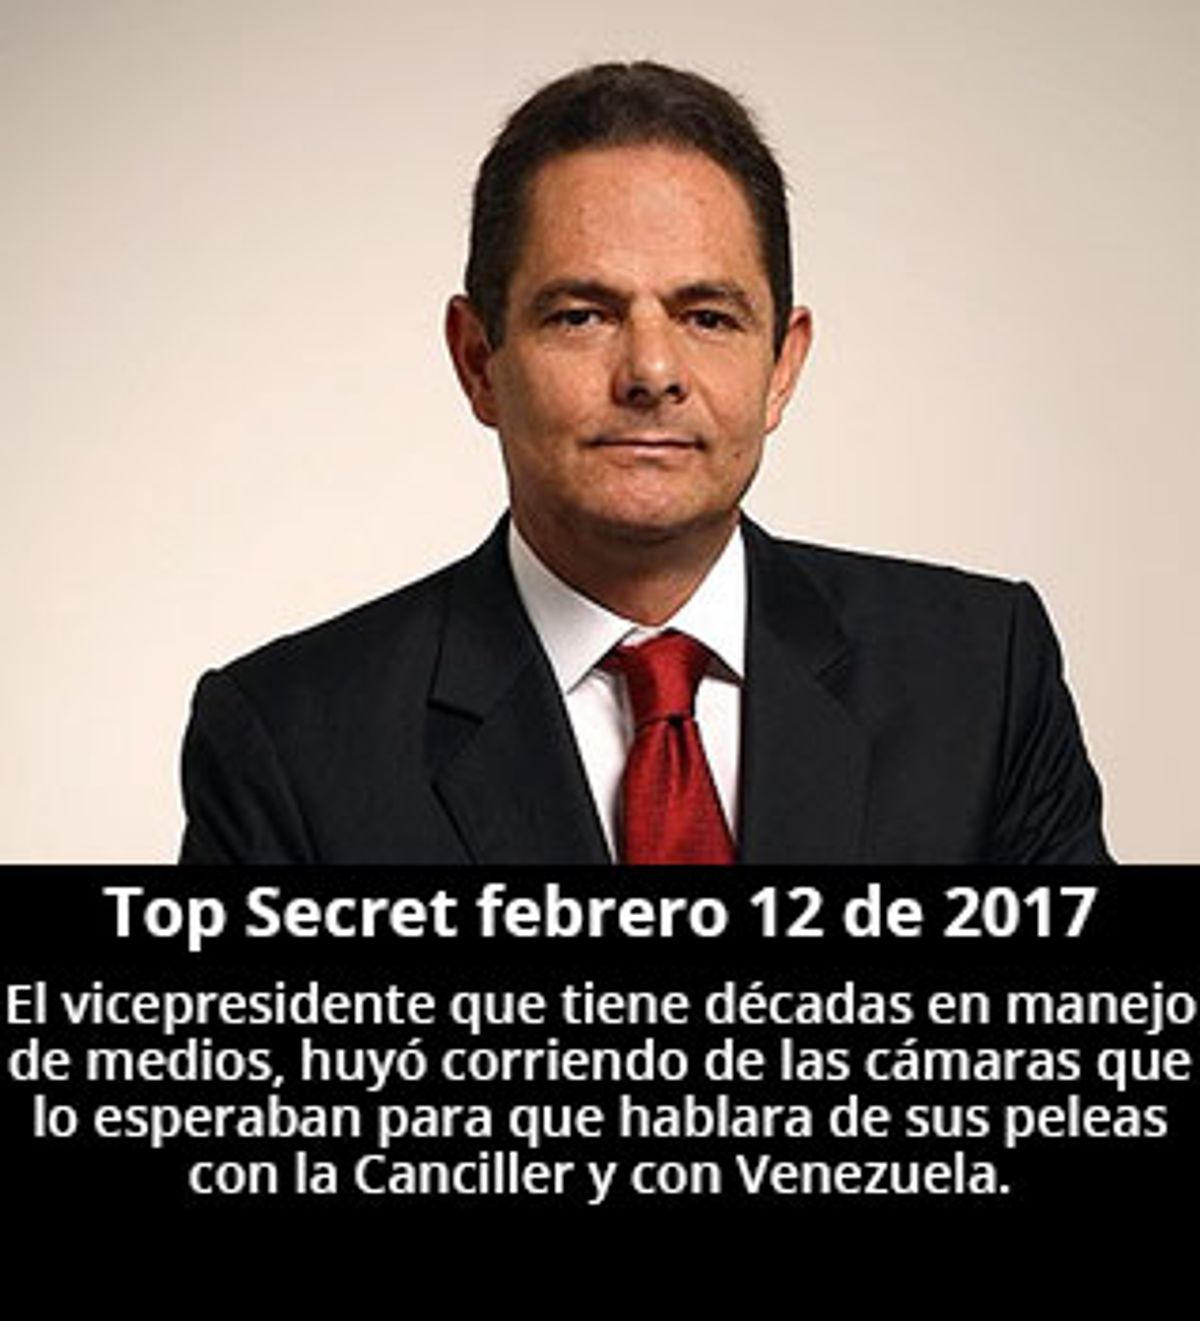 Top Secret febrero 12 de 2016